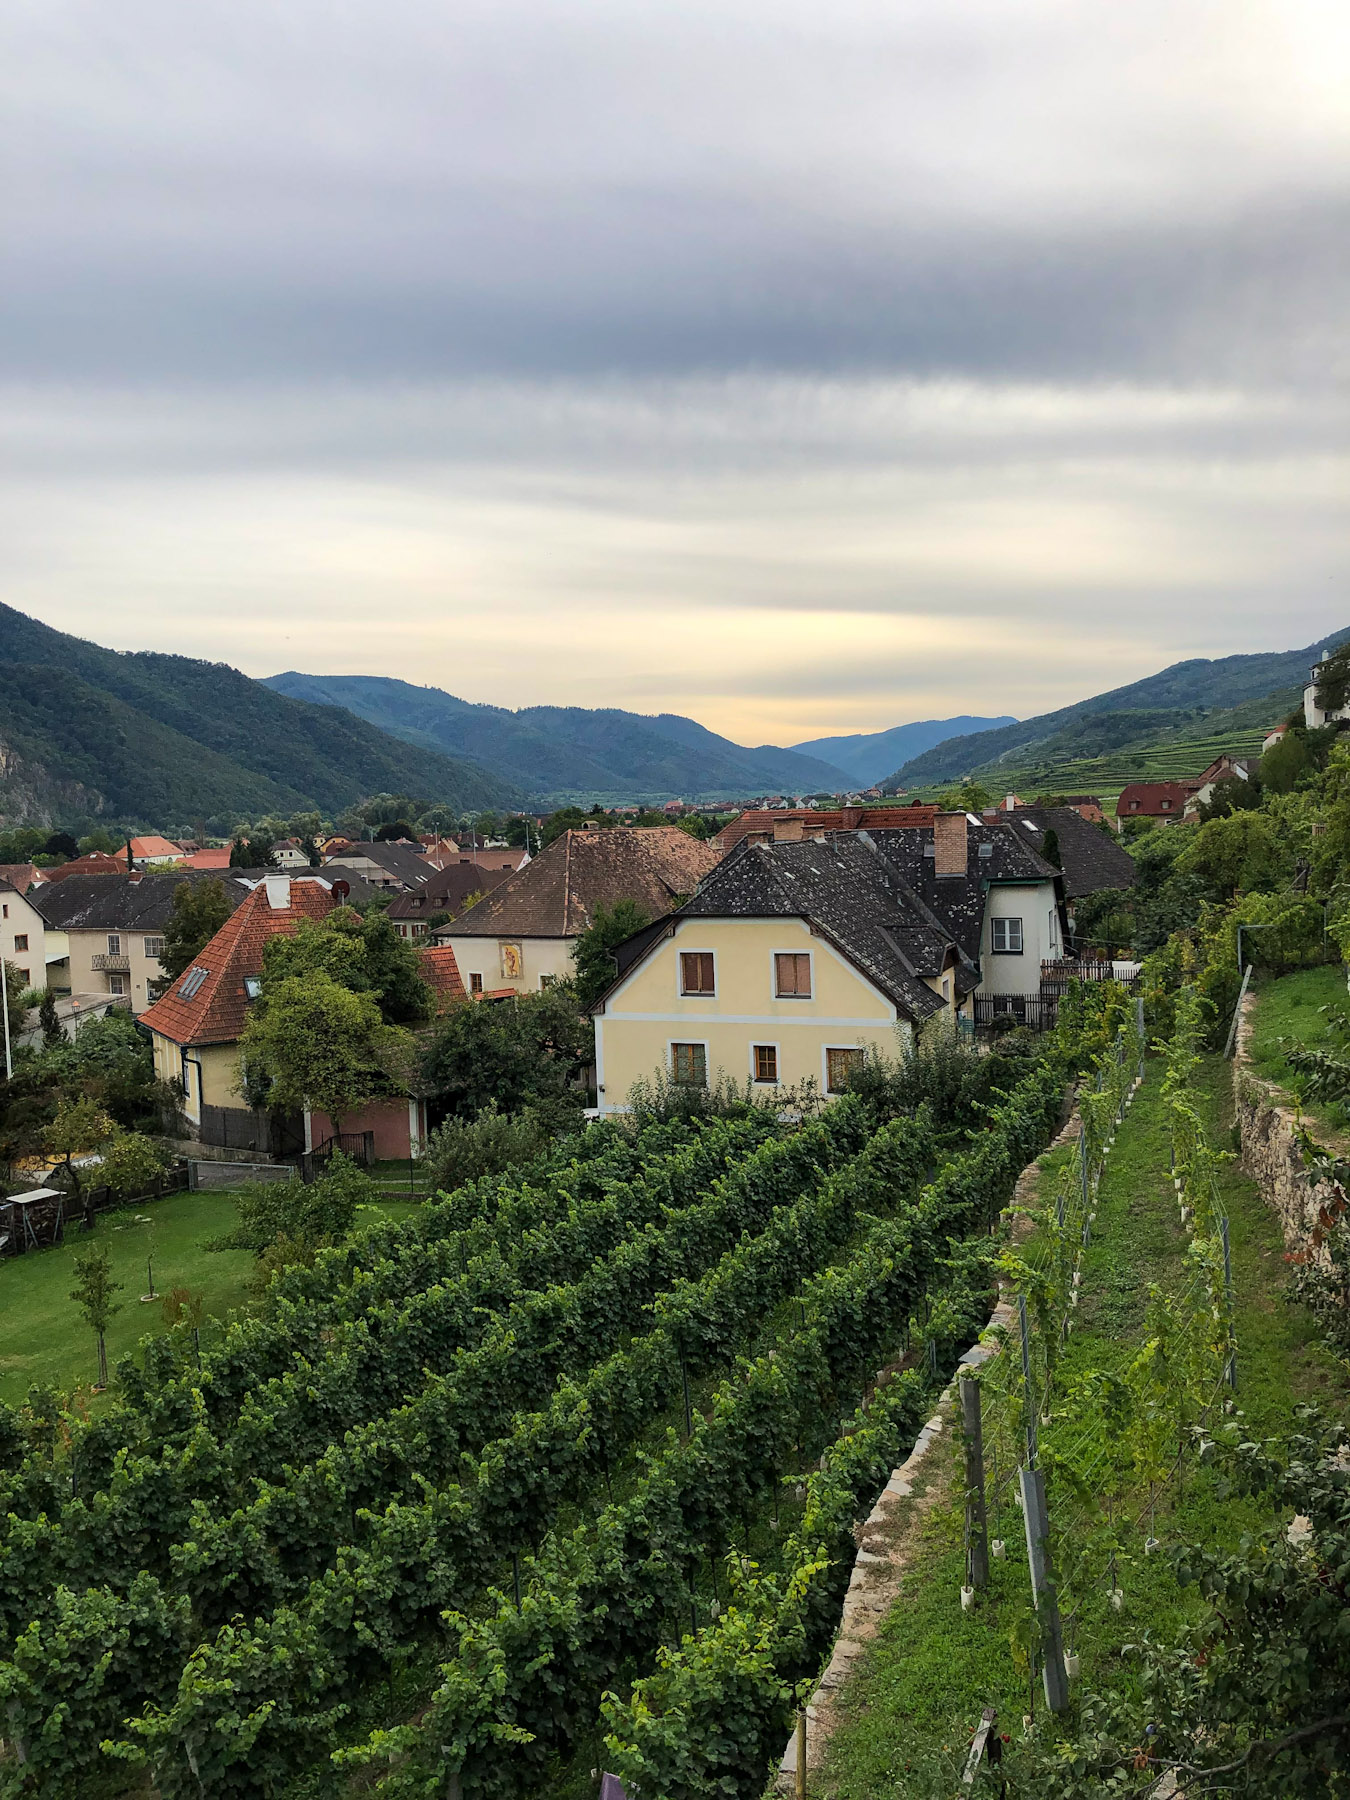 View of the Wachau from Weißenkirchen, Austria